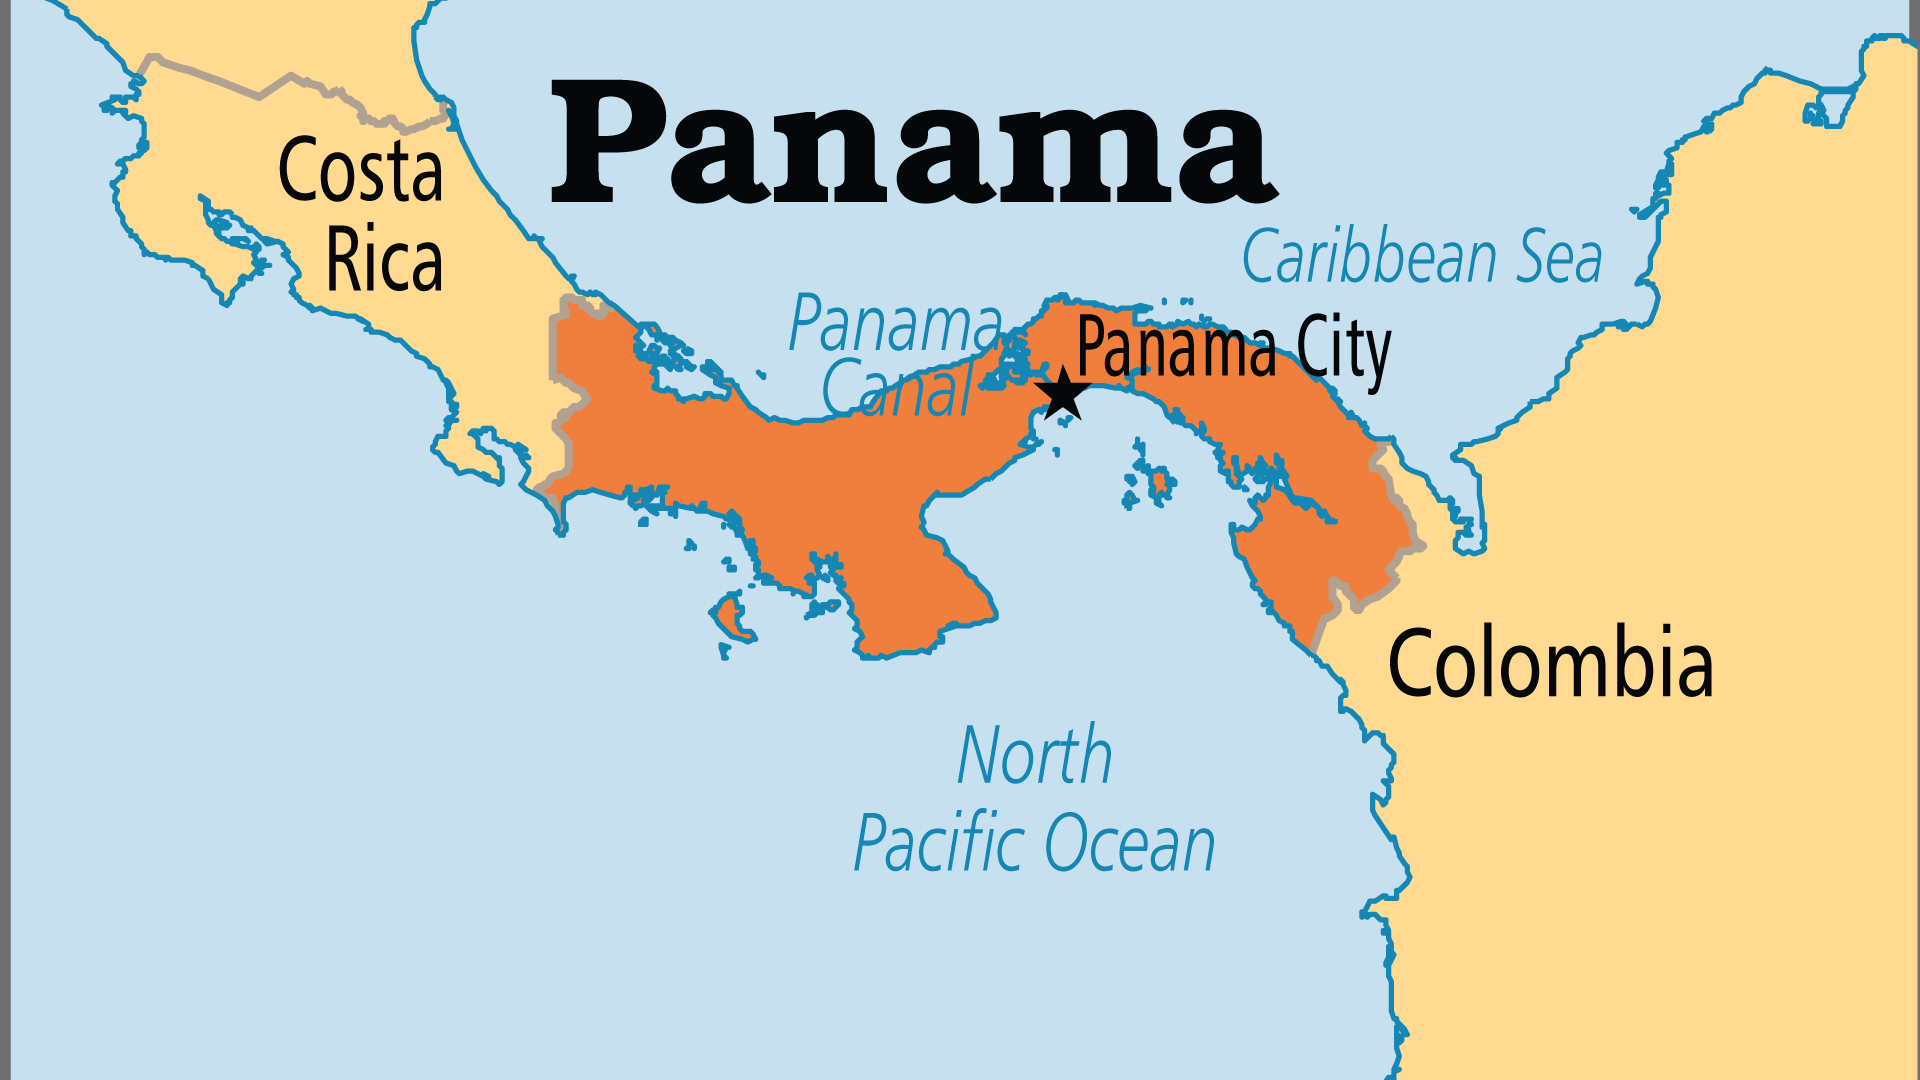 Panama (Operation World)